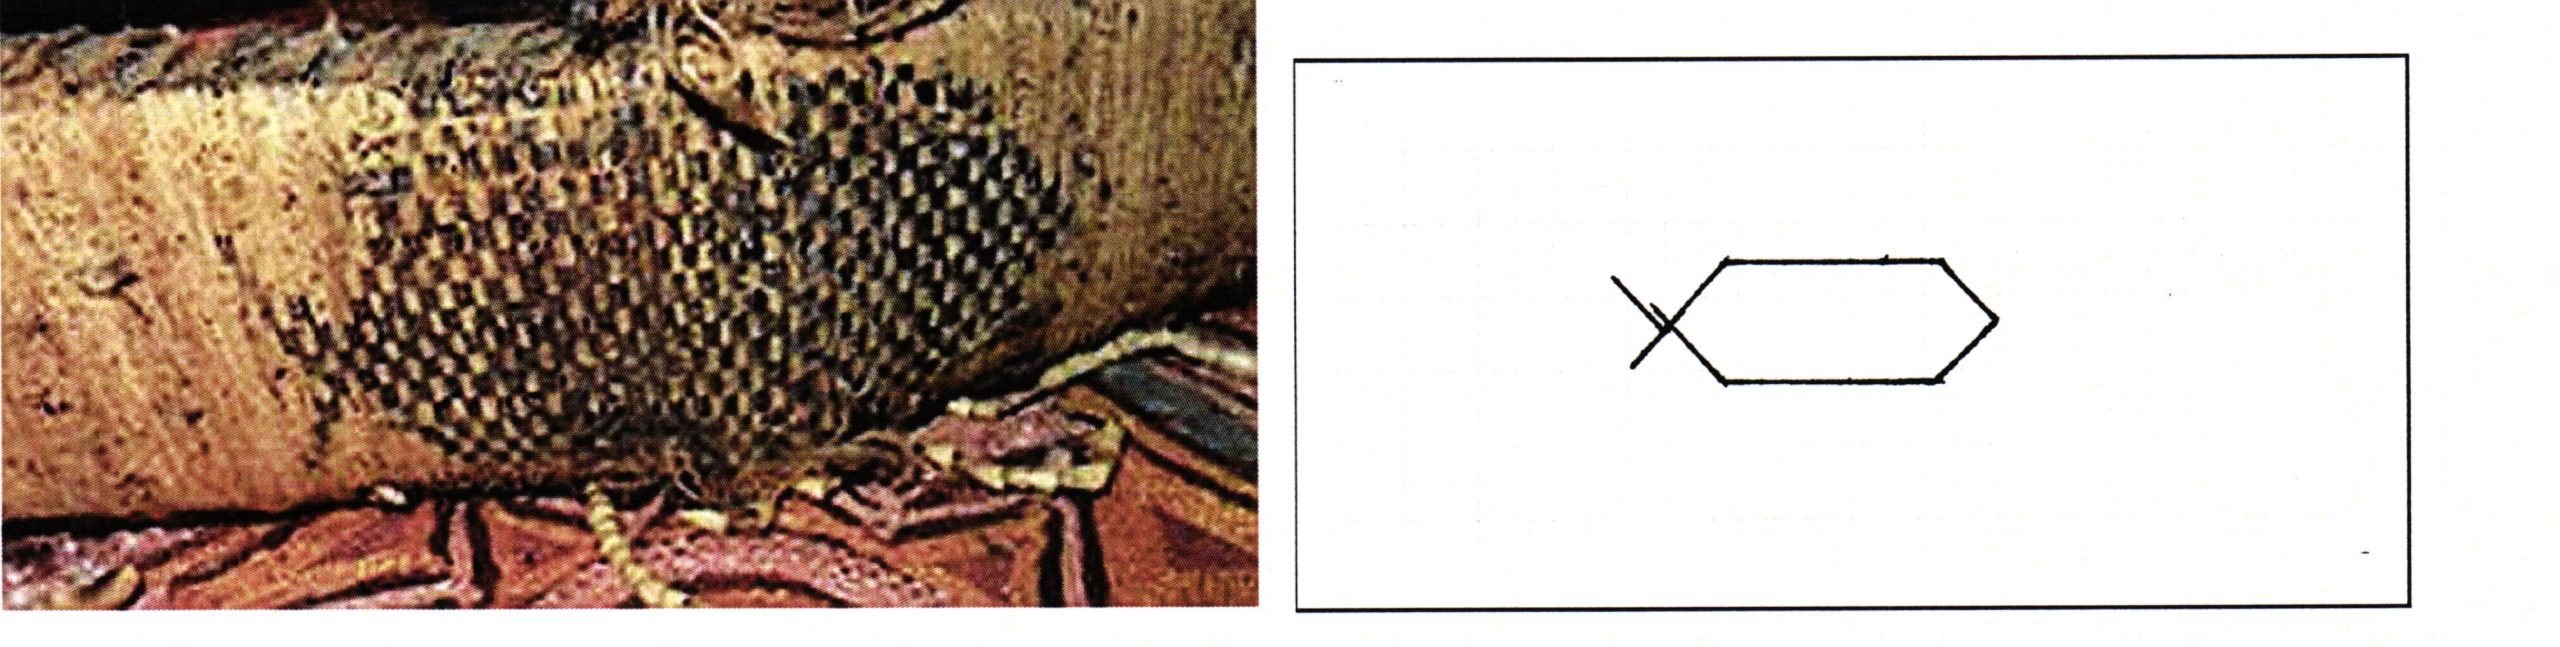 PGS 36,2 (2015) Tafel 41 Abb. 22: Federgeldrolle [EUBR 5]. Handwerkermarke langes Sechseck mit einseitigem Zeichen